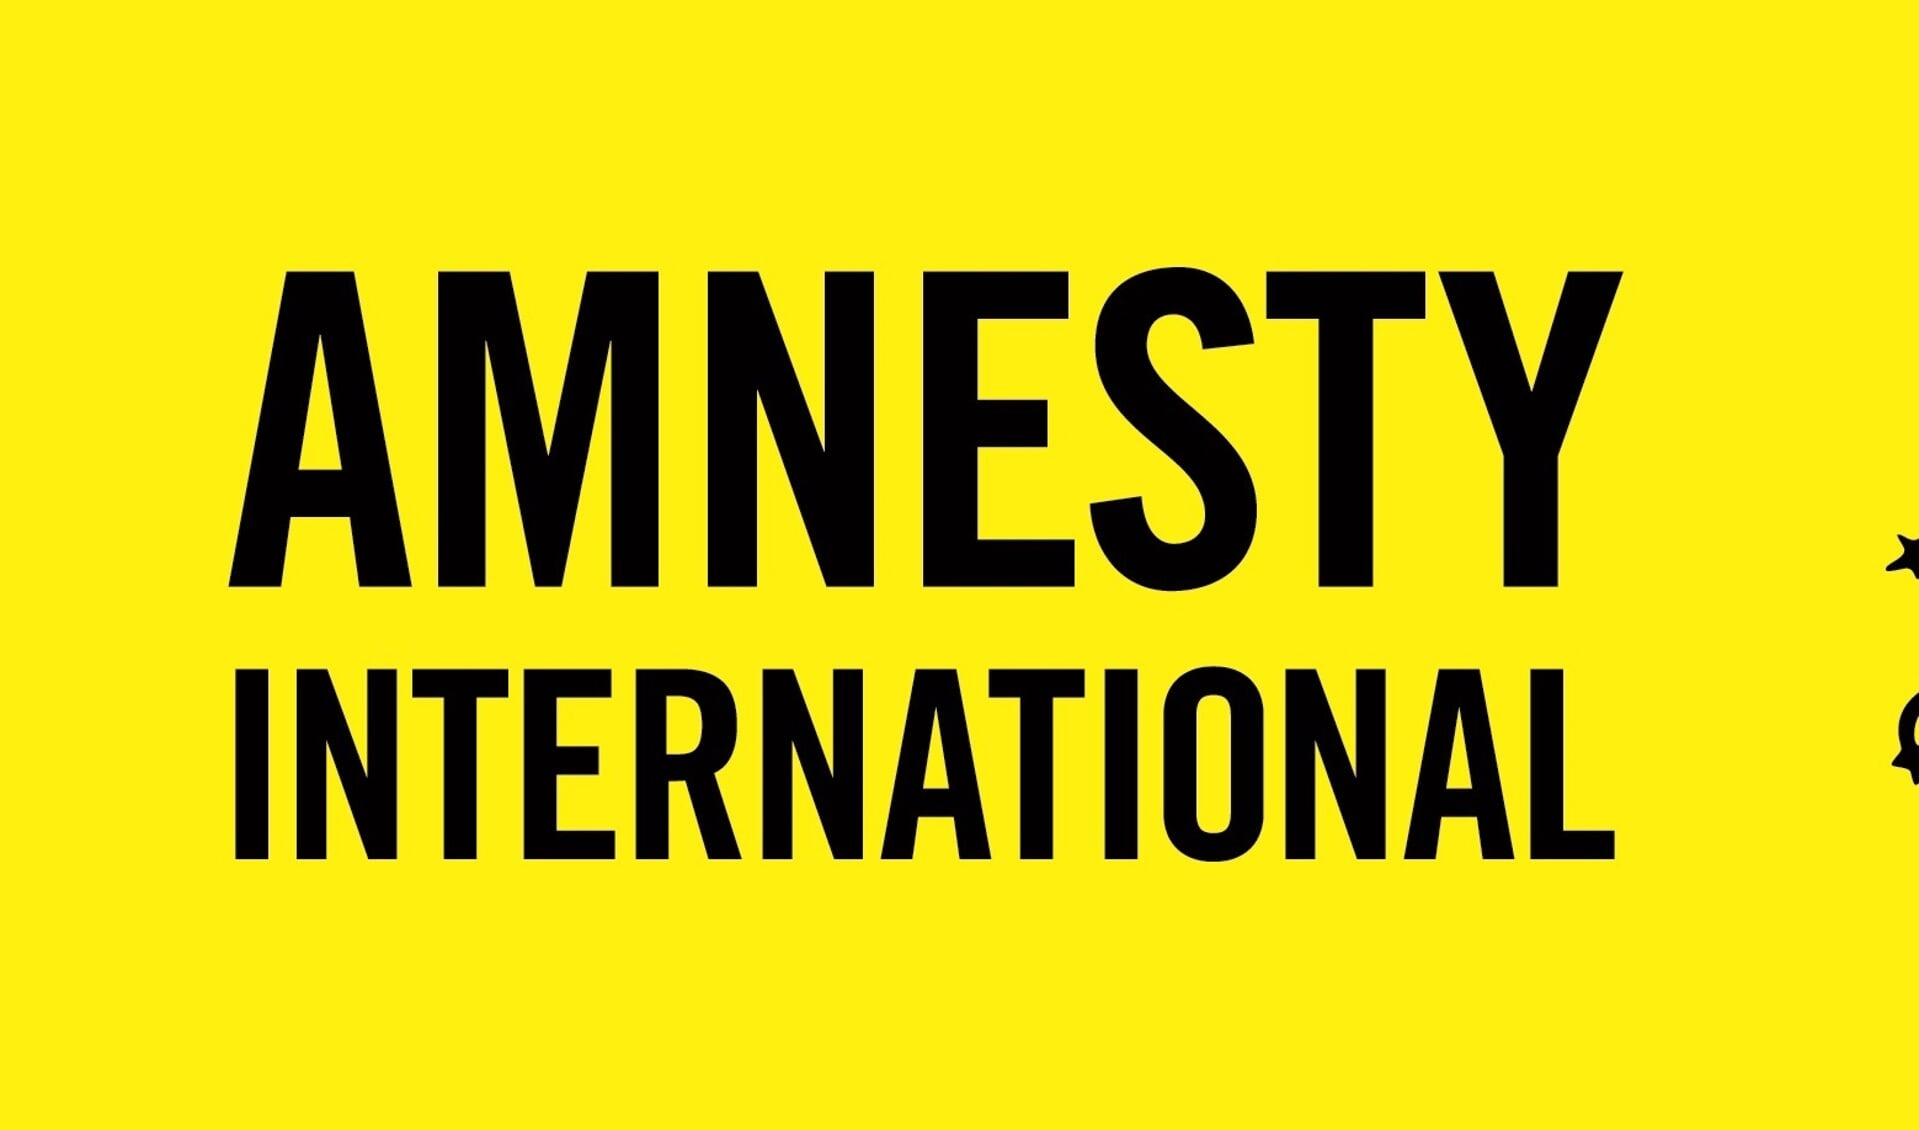 De jaarlijkse schrijfactie van Amnesty